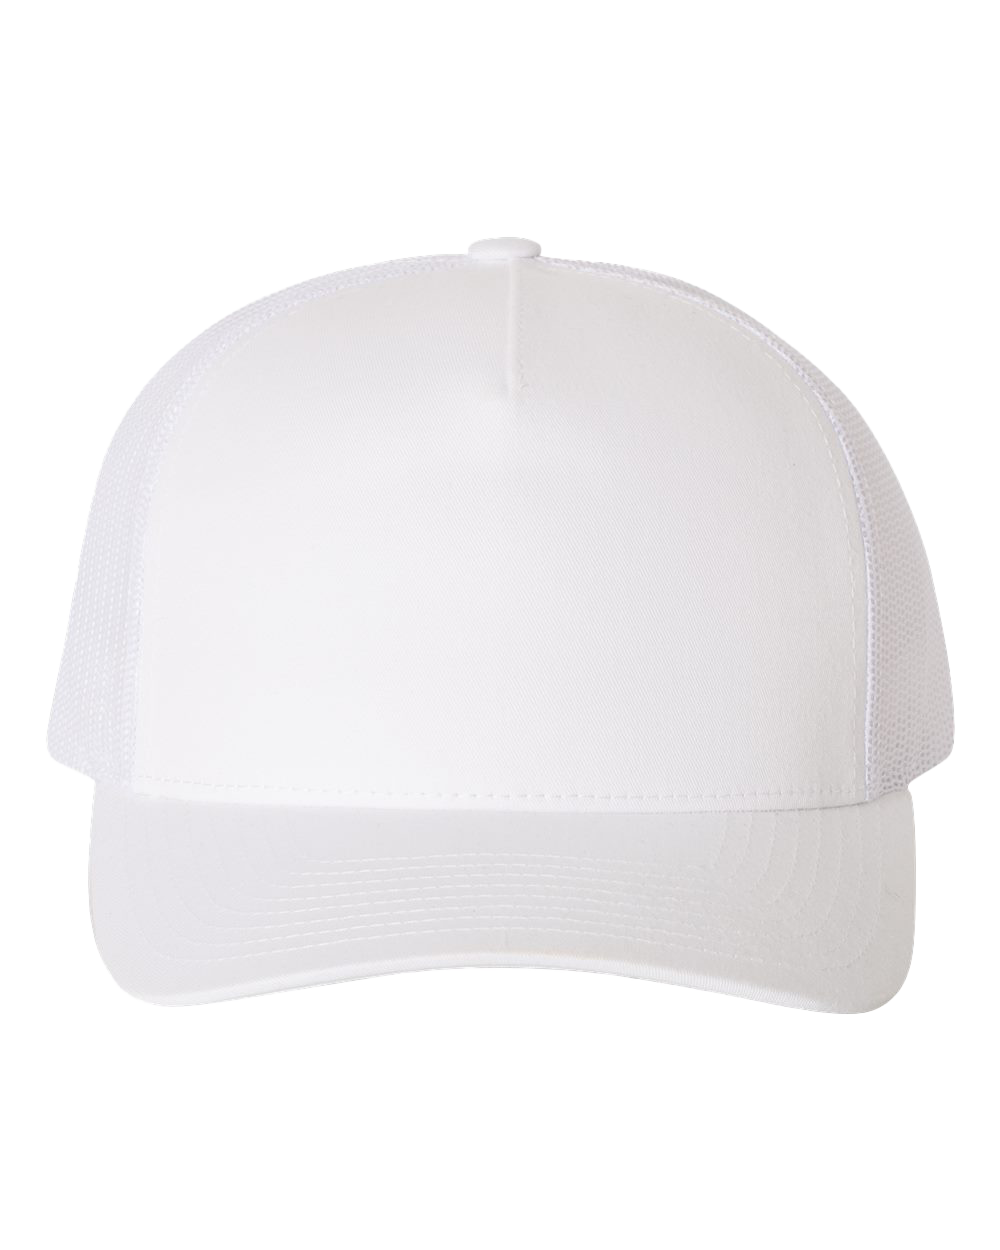 "The Lisa F" Stoopid Hat